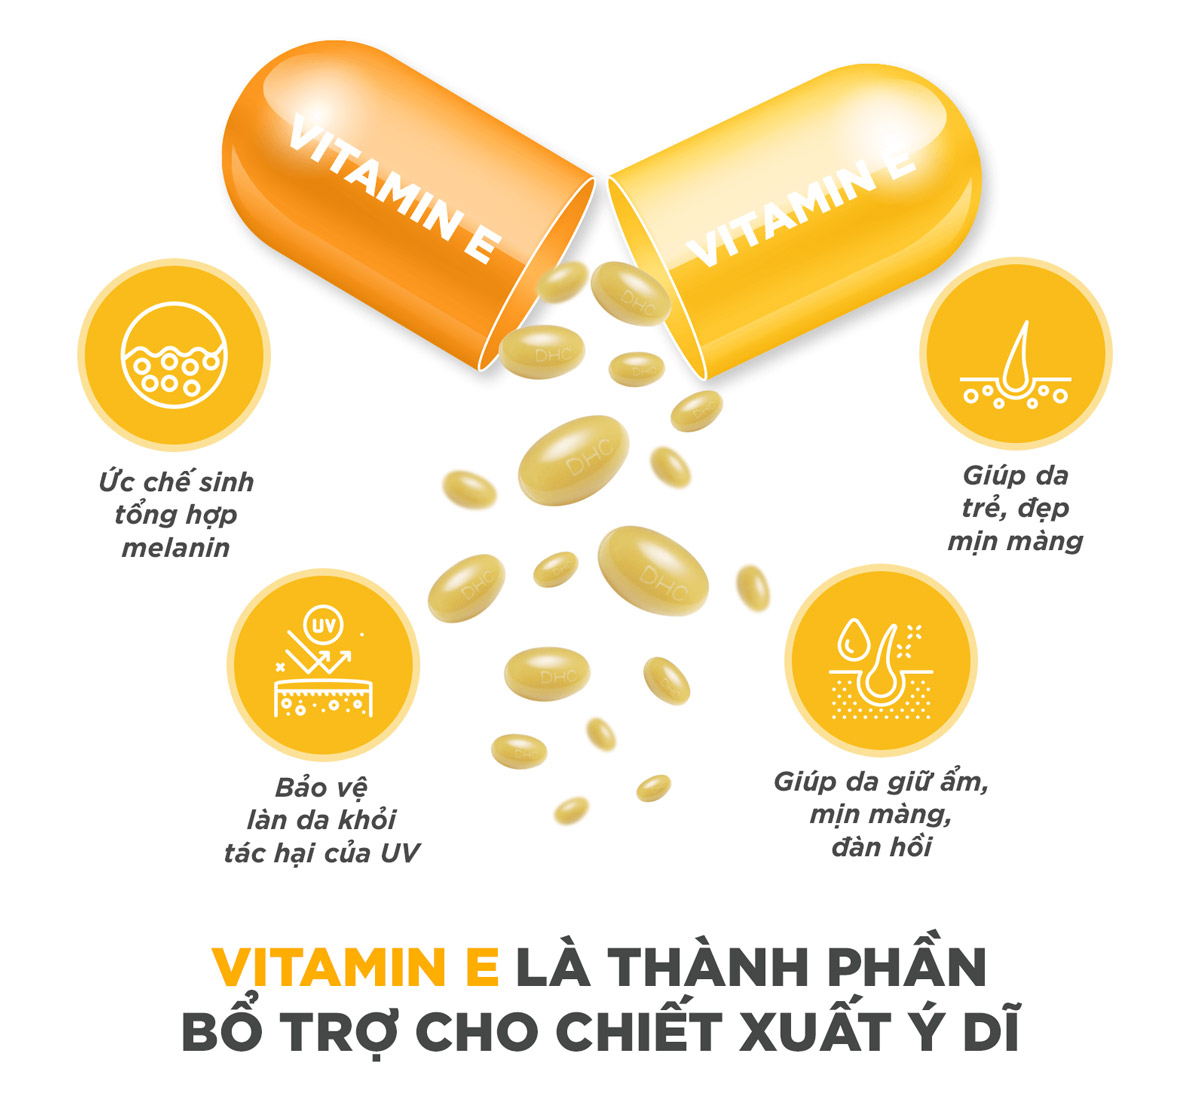 Viên Uống Sáng Da DHC chứa Vitamin E là thành phần bổ trợ cho chiết xuất Ý Dĩ, giúp chống oxy hoá và bảo vệ làn da khỏi tác hại của tia UV, đồng thời giữ ẩm cho da mịn màng, đàn hồi.